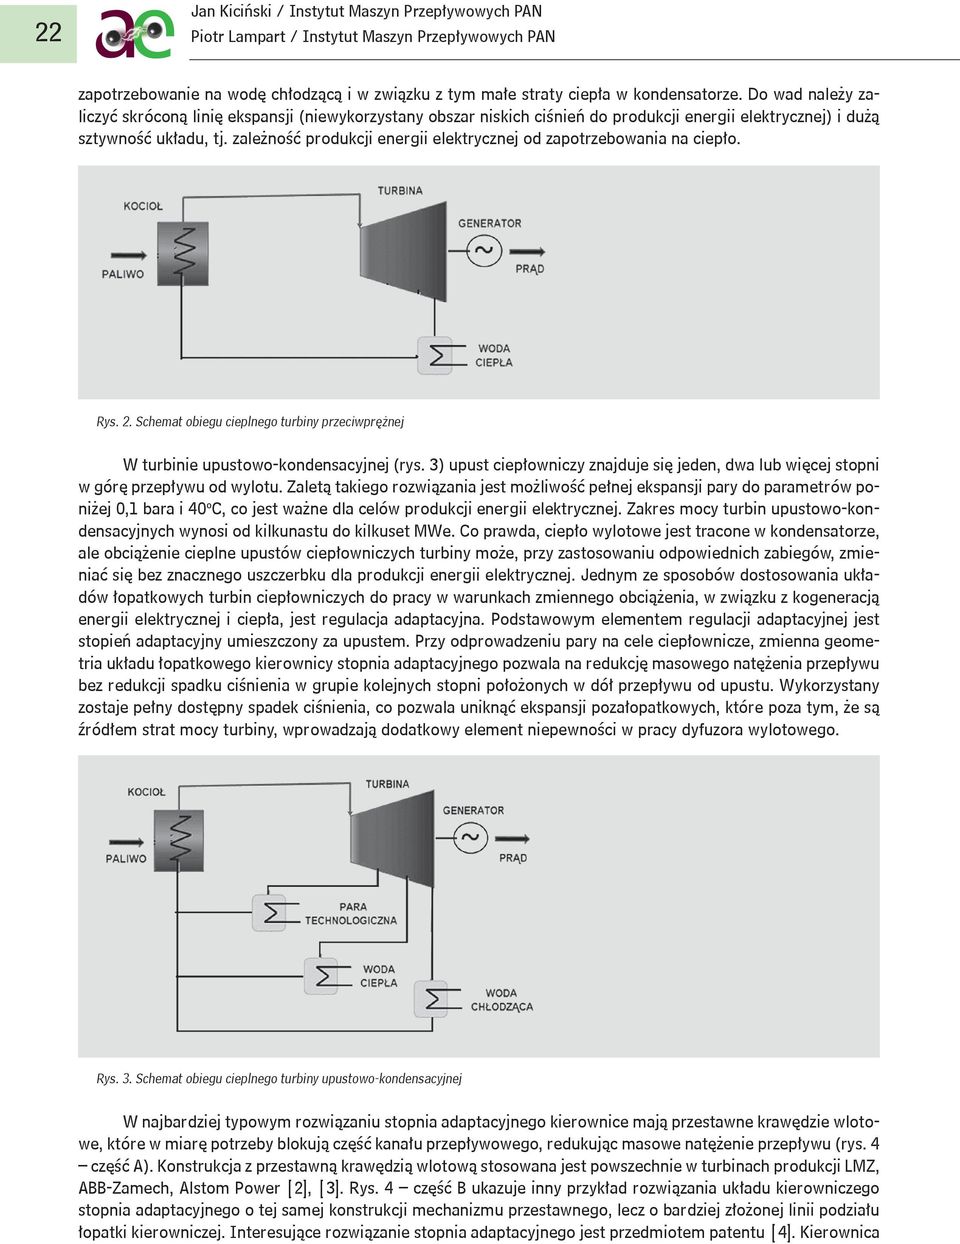 zależność produkcji energii elektrycznej od zapotrzebowania na ciepło. Rys. 2. Schemat obiegu cieplnego turbiny przeciwprężnej W turbinie upustowo-kondensacyjnej (rys.